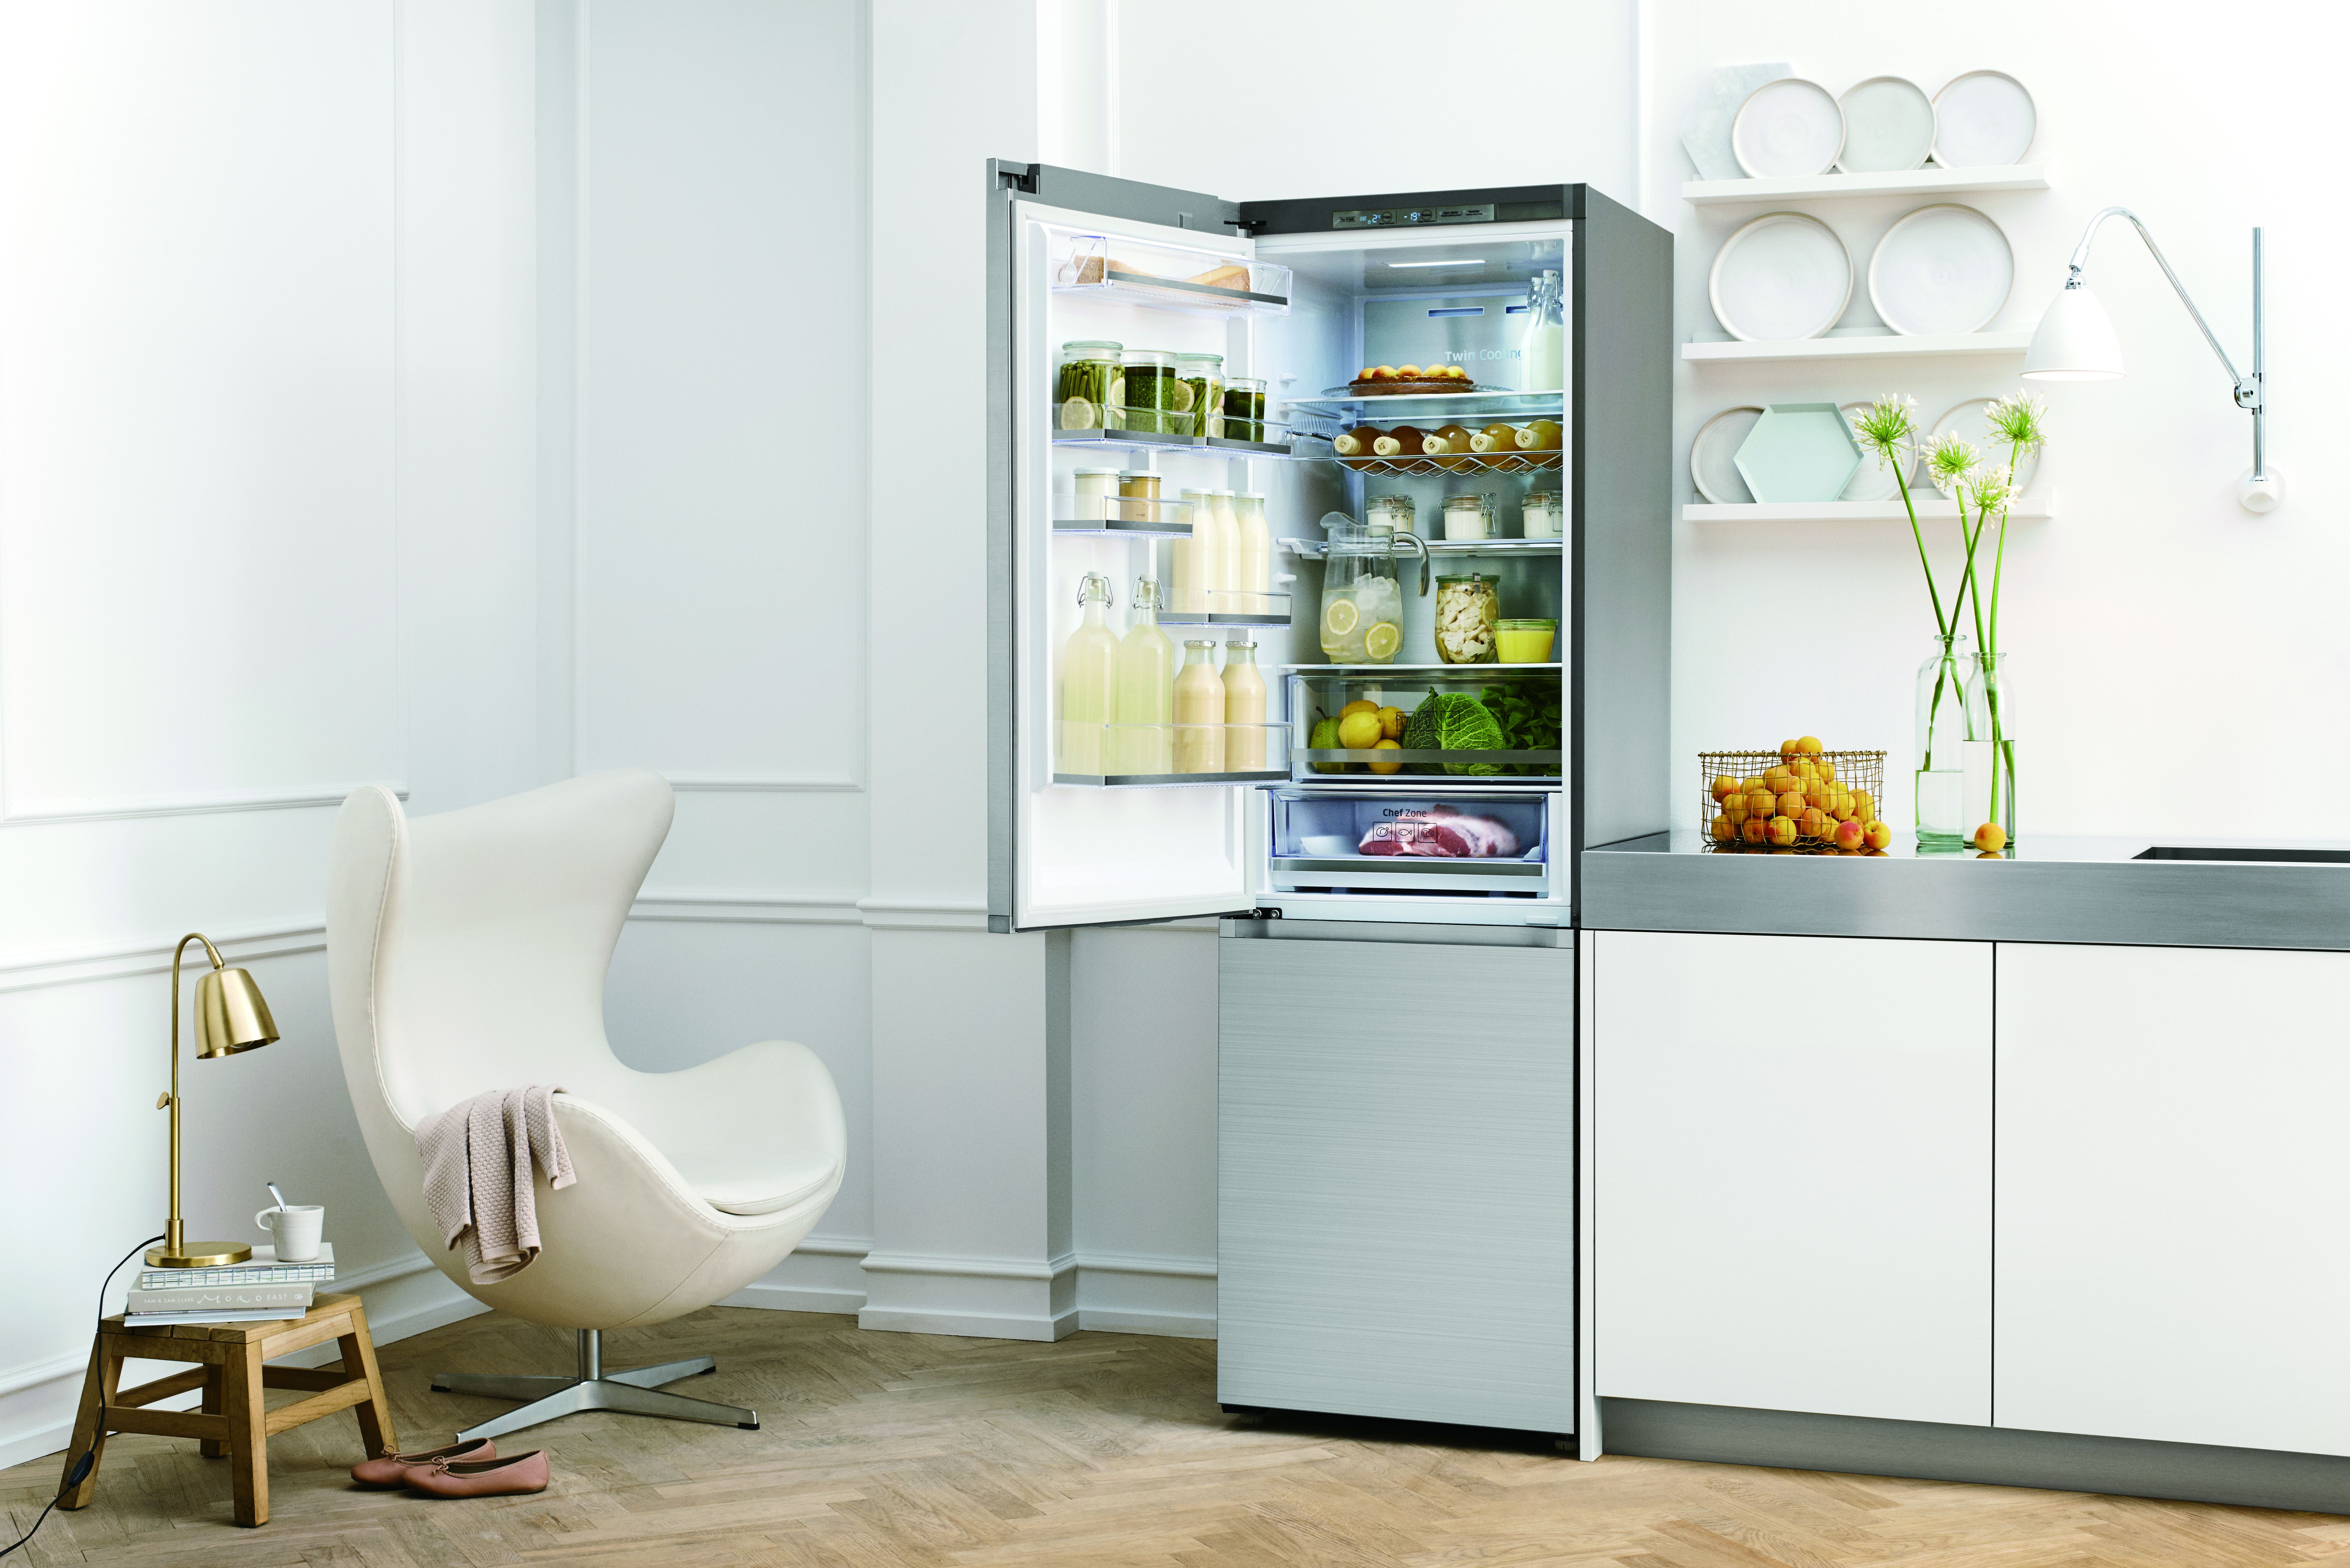 Рейтинг 2020 года лучших холодильников по качеству и надежности. - domwine